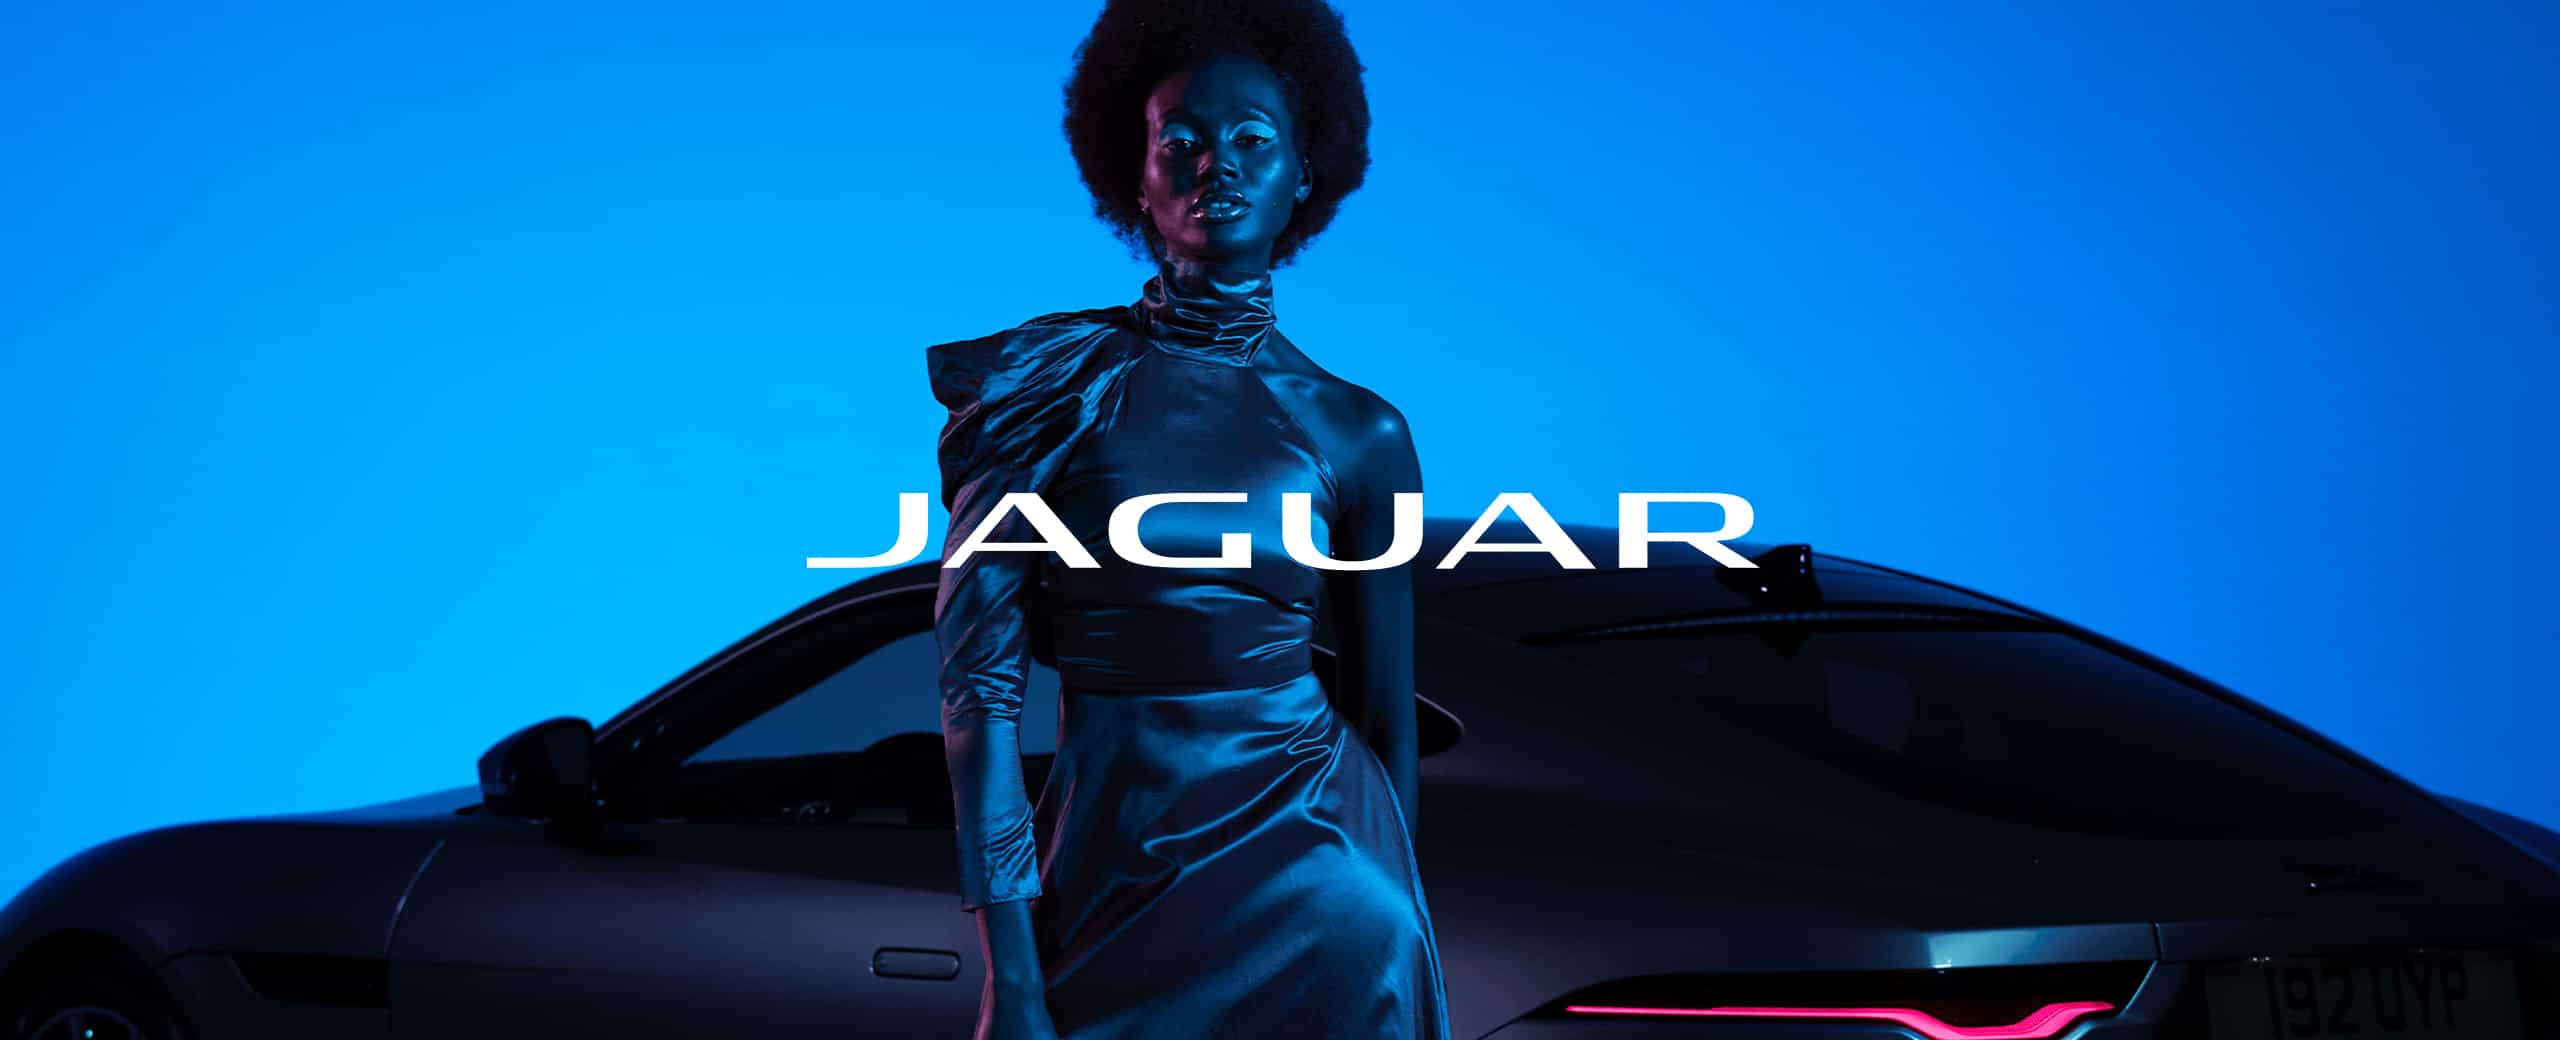 Jaguar Sedans, SUVs and Sports Cars - Official Site